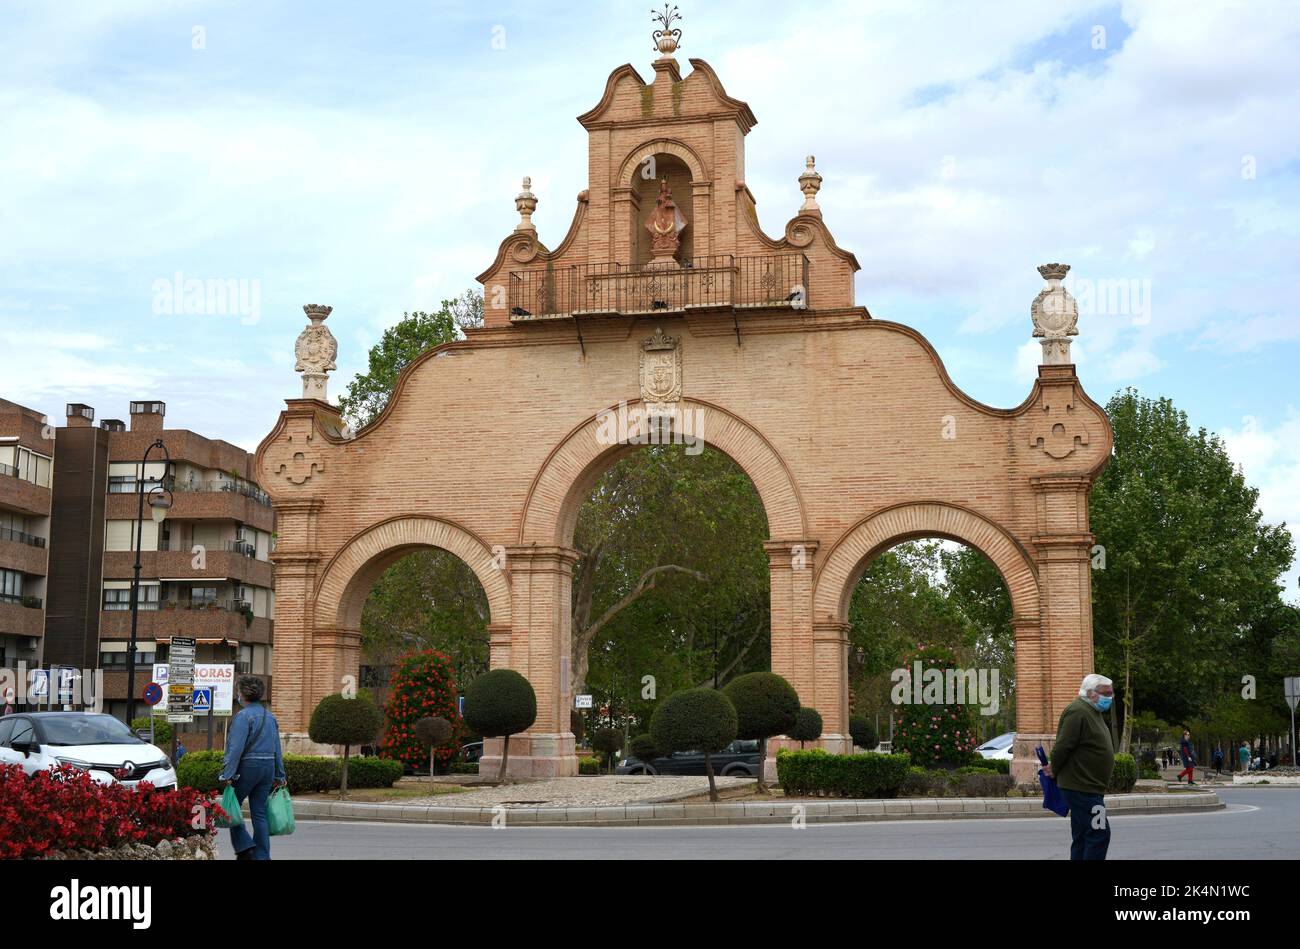 Antequera, Puerta de Estepa (gli originali sono dell'anno 1749 e la ricostruzione del 1998). Málaga, Andalusia, Spagna. Foto Stock